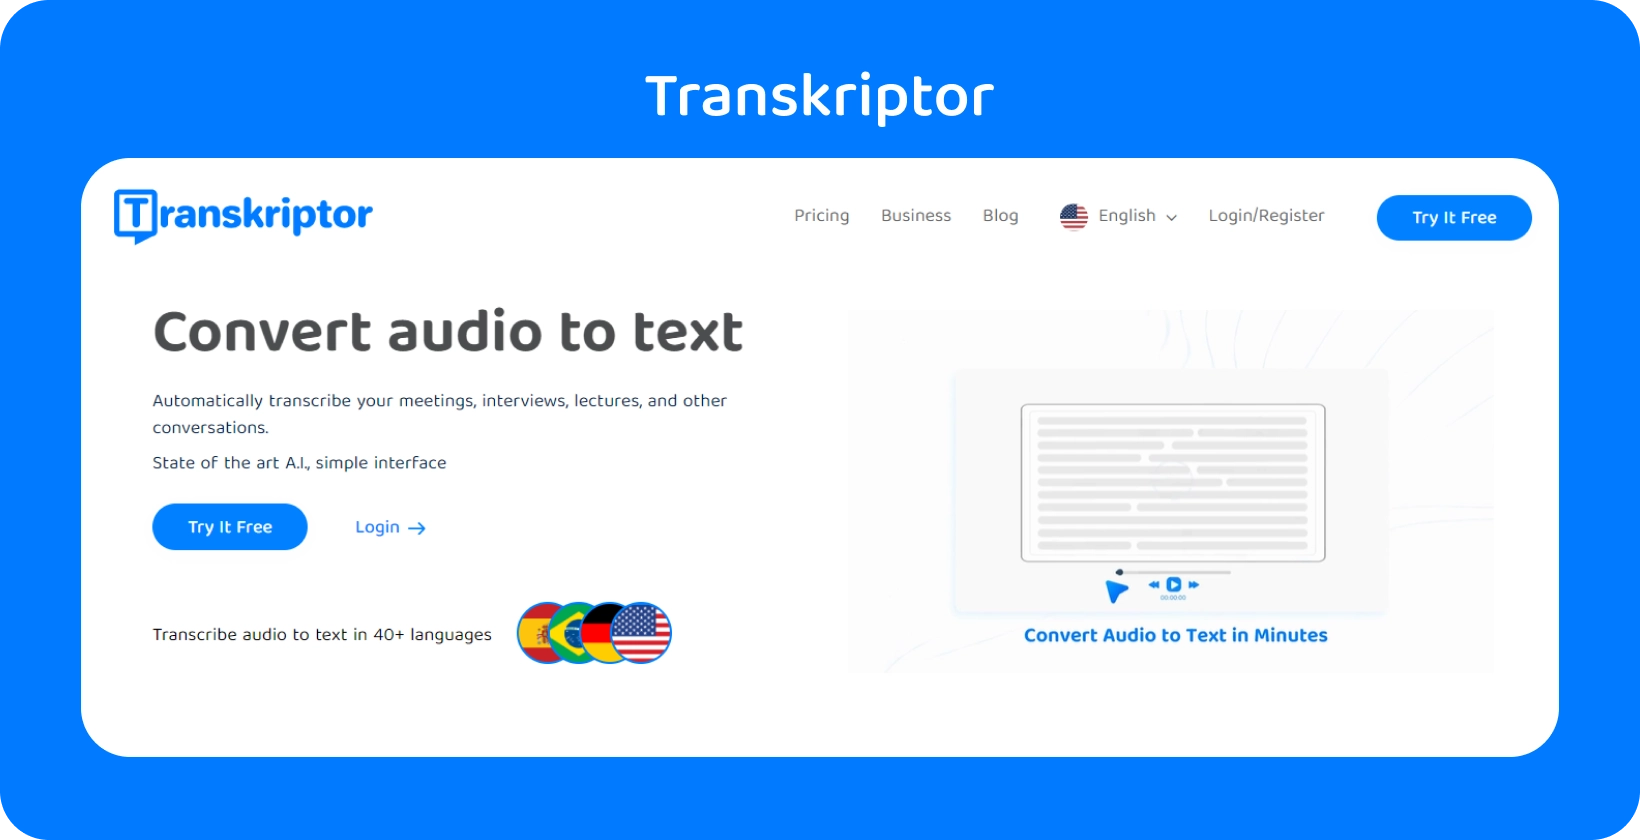 L'interfaccia di Transkriptor mostra la conversione audio in testo, supportando oltre 40 lingue per diversi formati di file.
